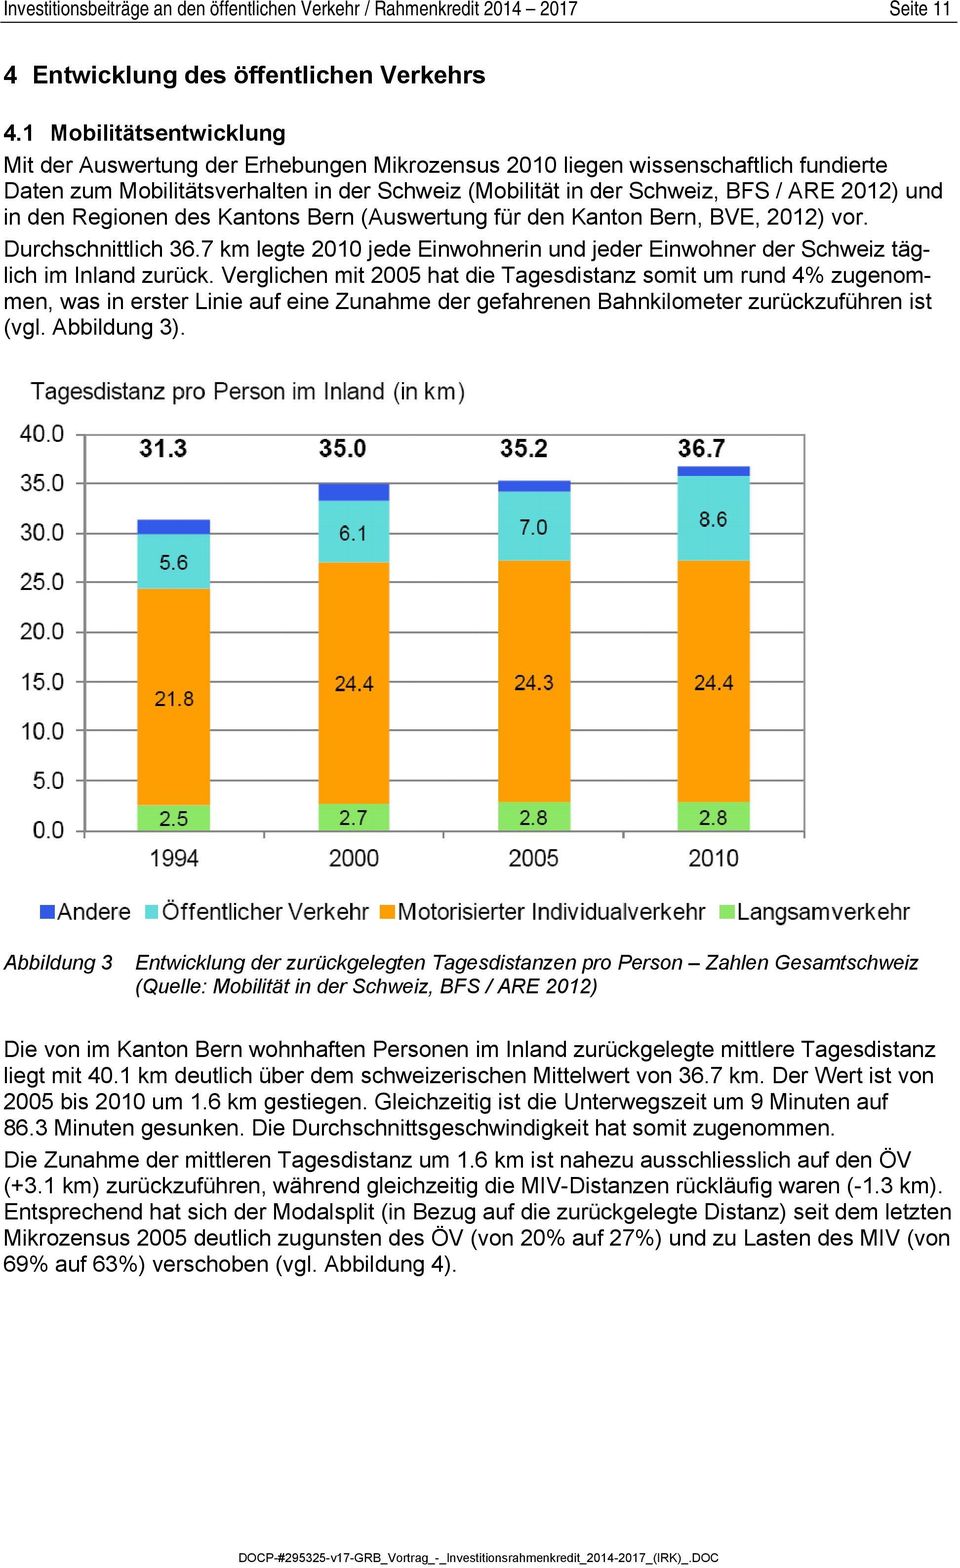 und in den Regionen des Kantons Bern (Auswertung für den Kanton Bern, BVE, 2012) vor. Durchschnittlich 36.7 km legte 2010 jede Einwohnerin und jeder Einwohner der Schweiz täglich im Inland zurück.